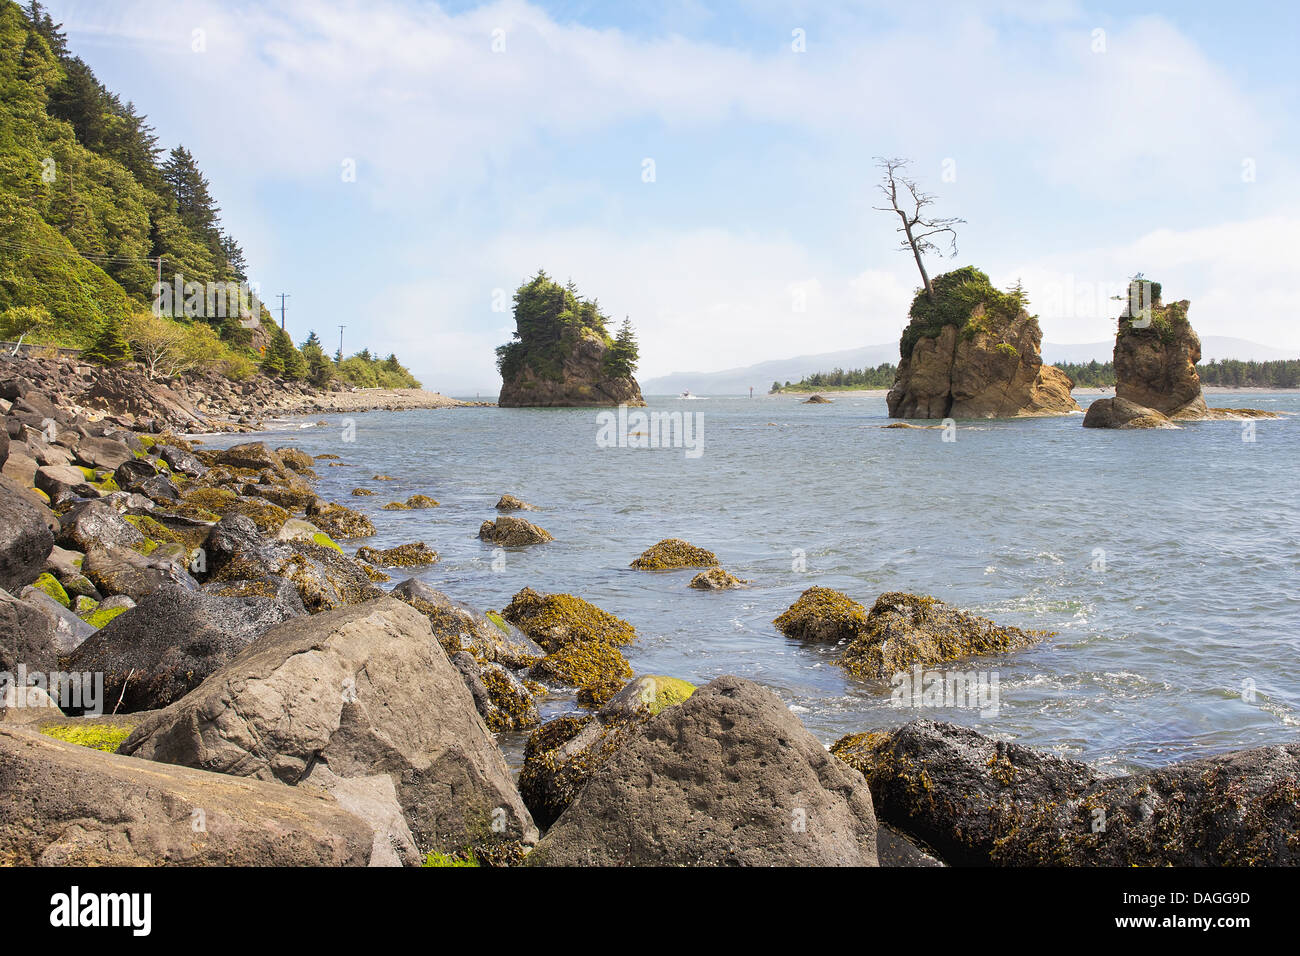 Schwein und Sow Inlet in Garibaldi Strand Tillamook Bay Oregon Stockfoto